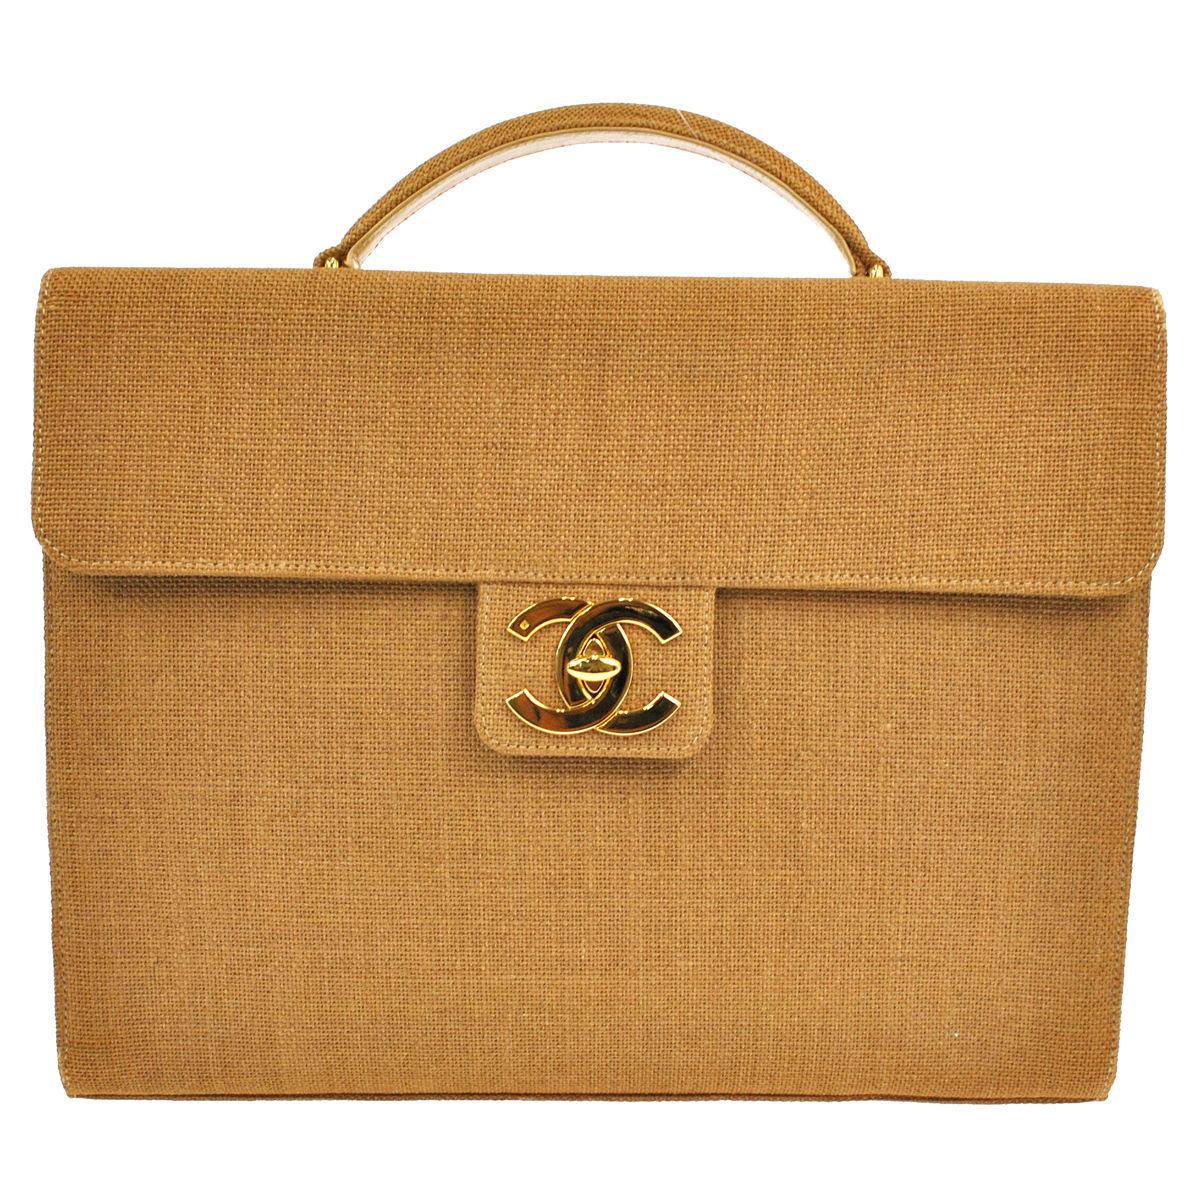 Chanel Vintage Cognac Tan Canvas Large Charm Top Handle Business Flap Bag